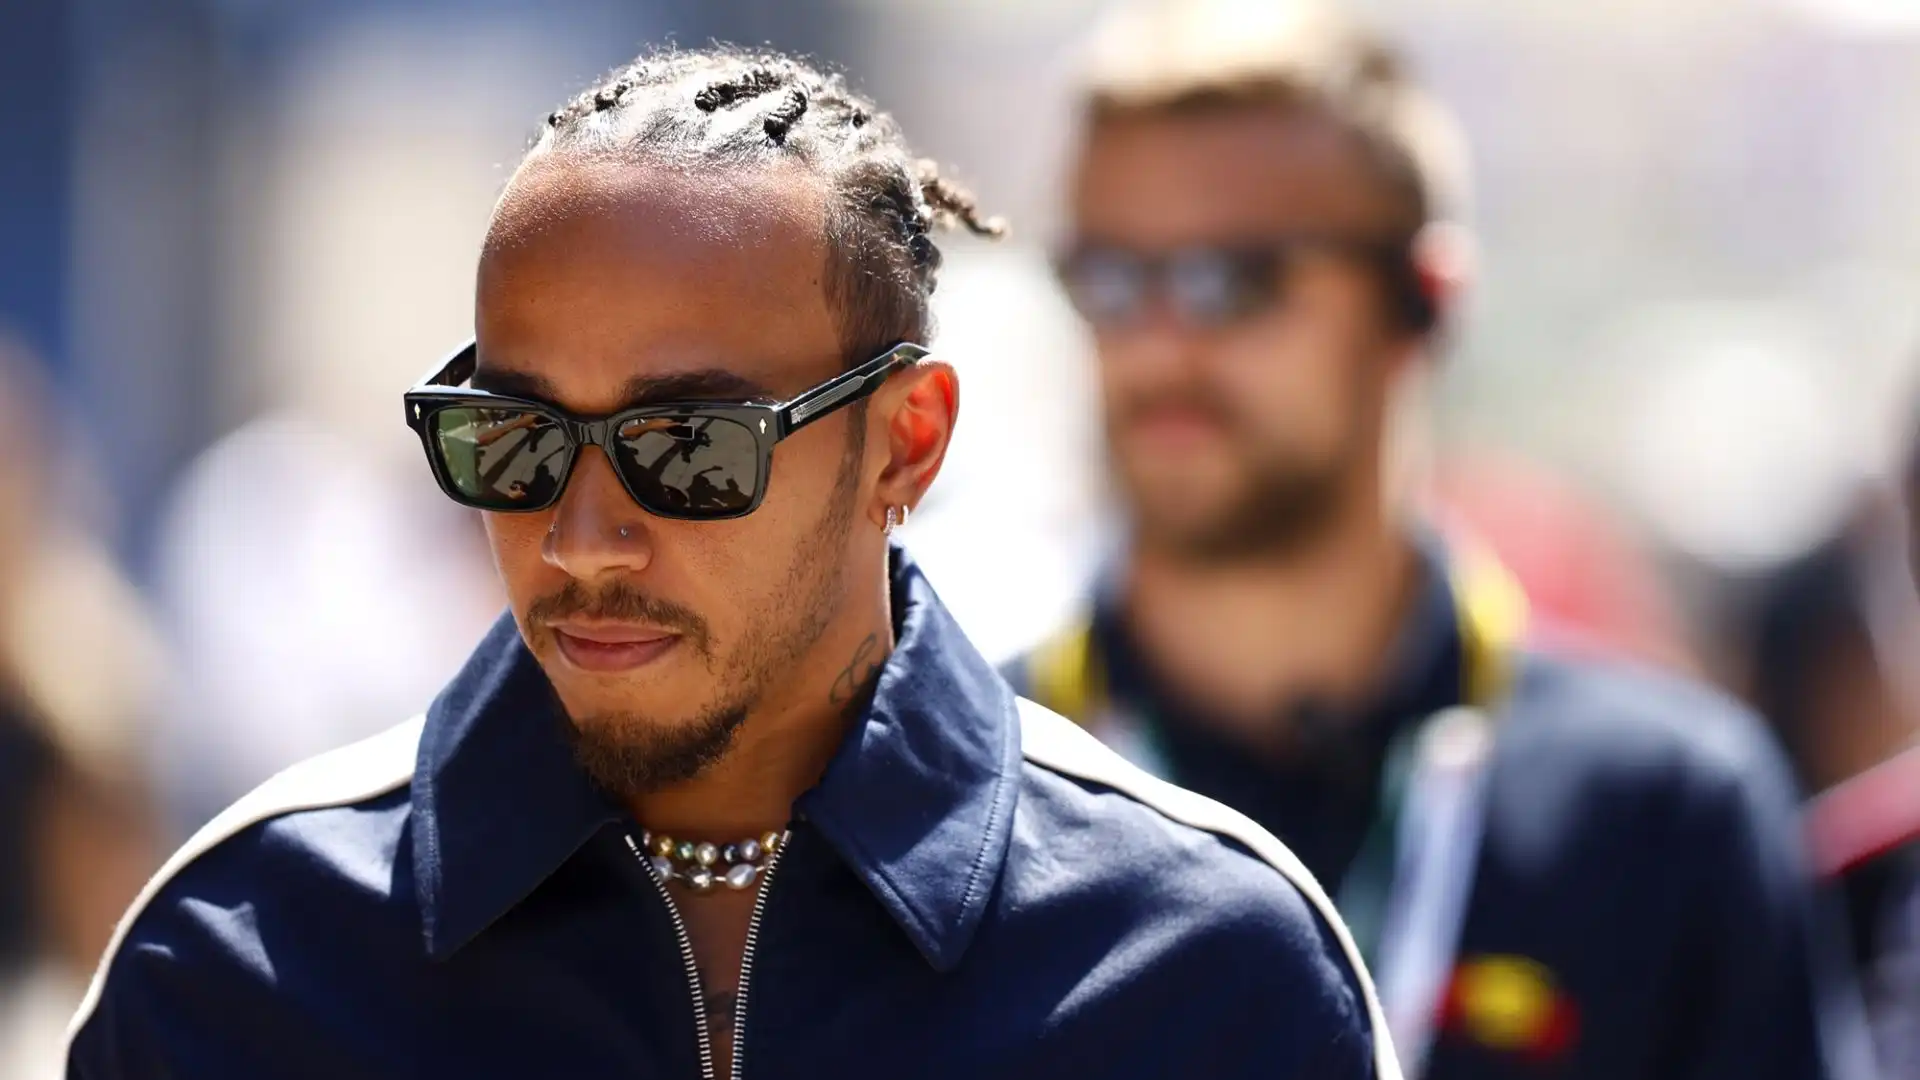 "L’era dei successi di Hamilton e Mercedes è ormai finita", ha detto Irvine alla Gazzetta dello Sport